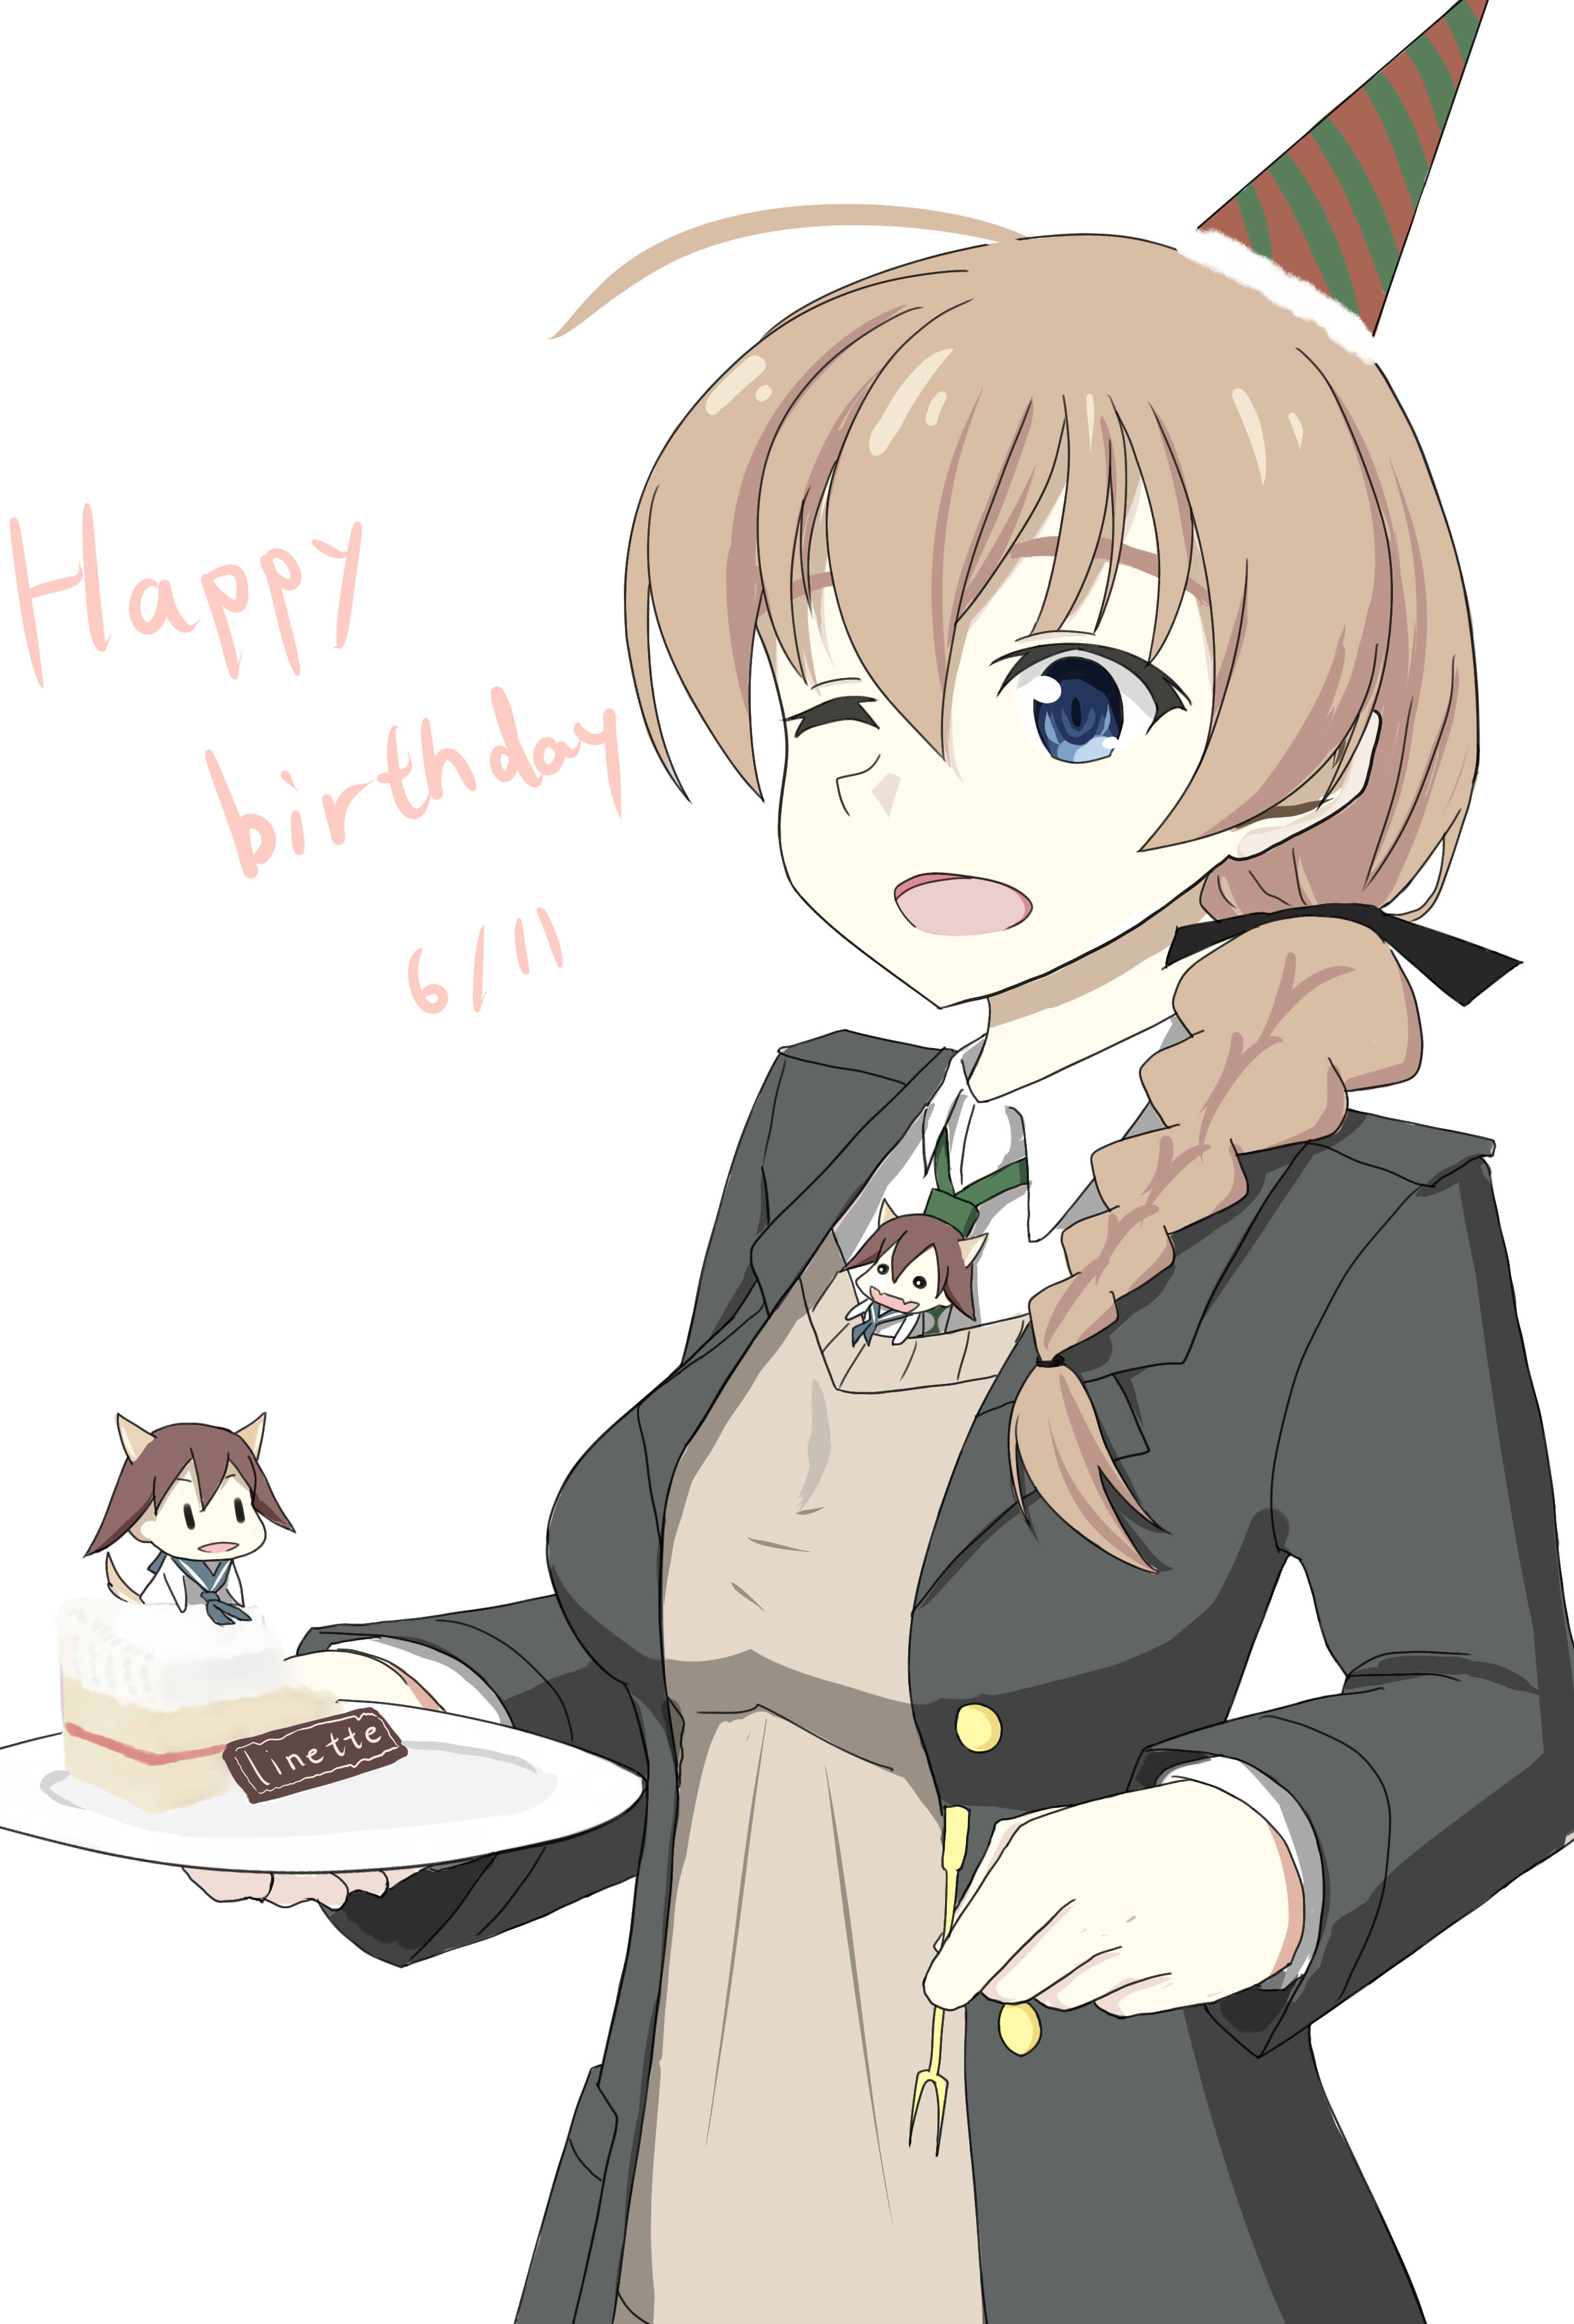 生日快乐!